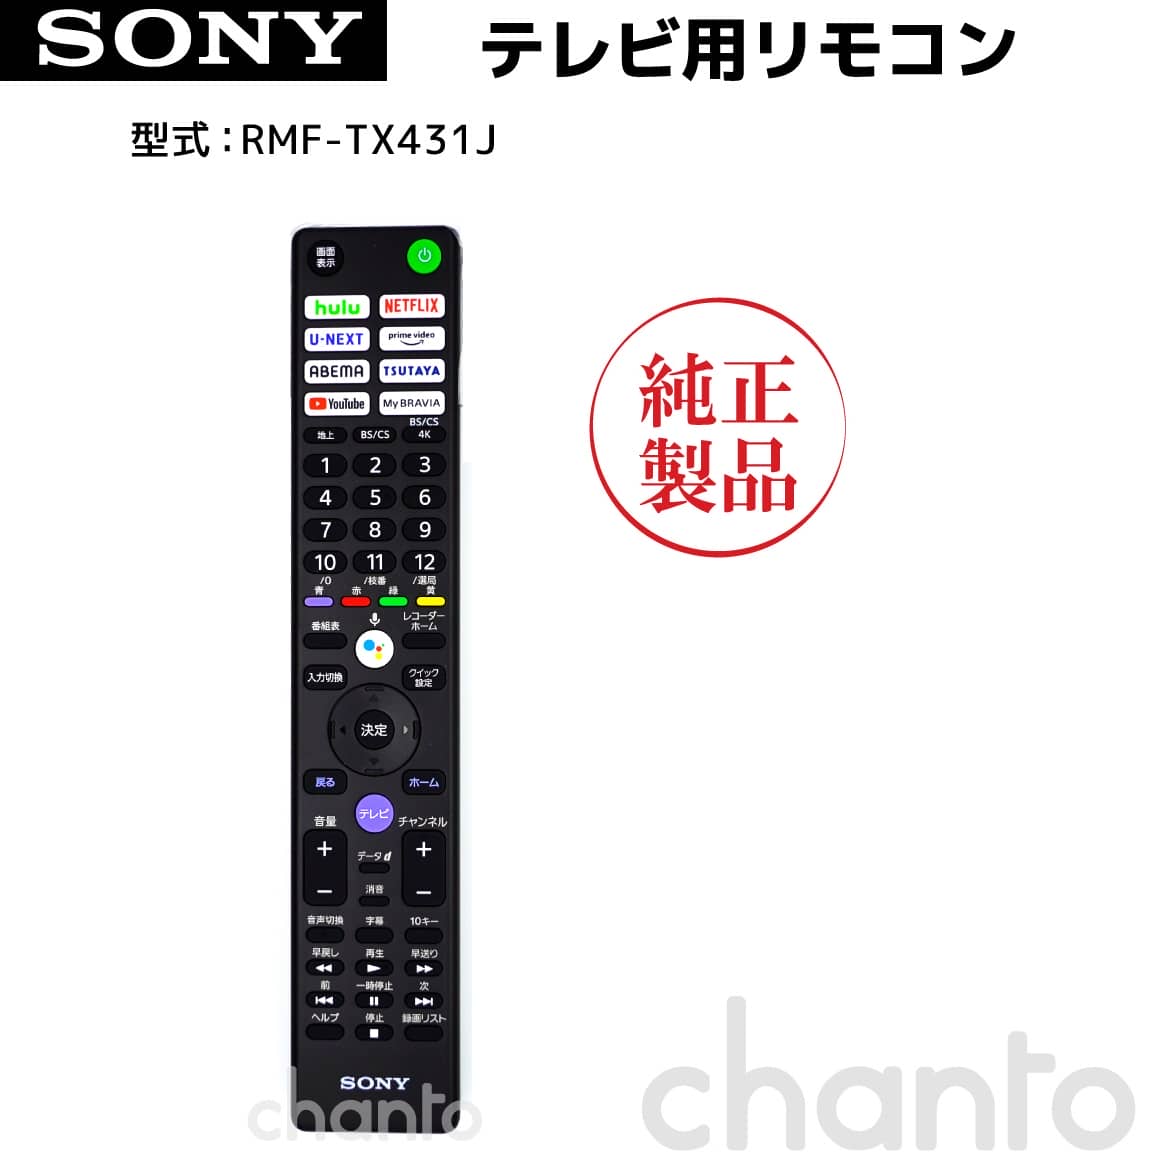 SONY ブラビアリモコン RMF-TX441J 純正 部品 【送料無料】 Chanto3588